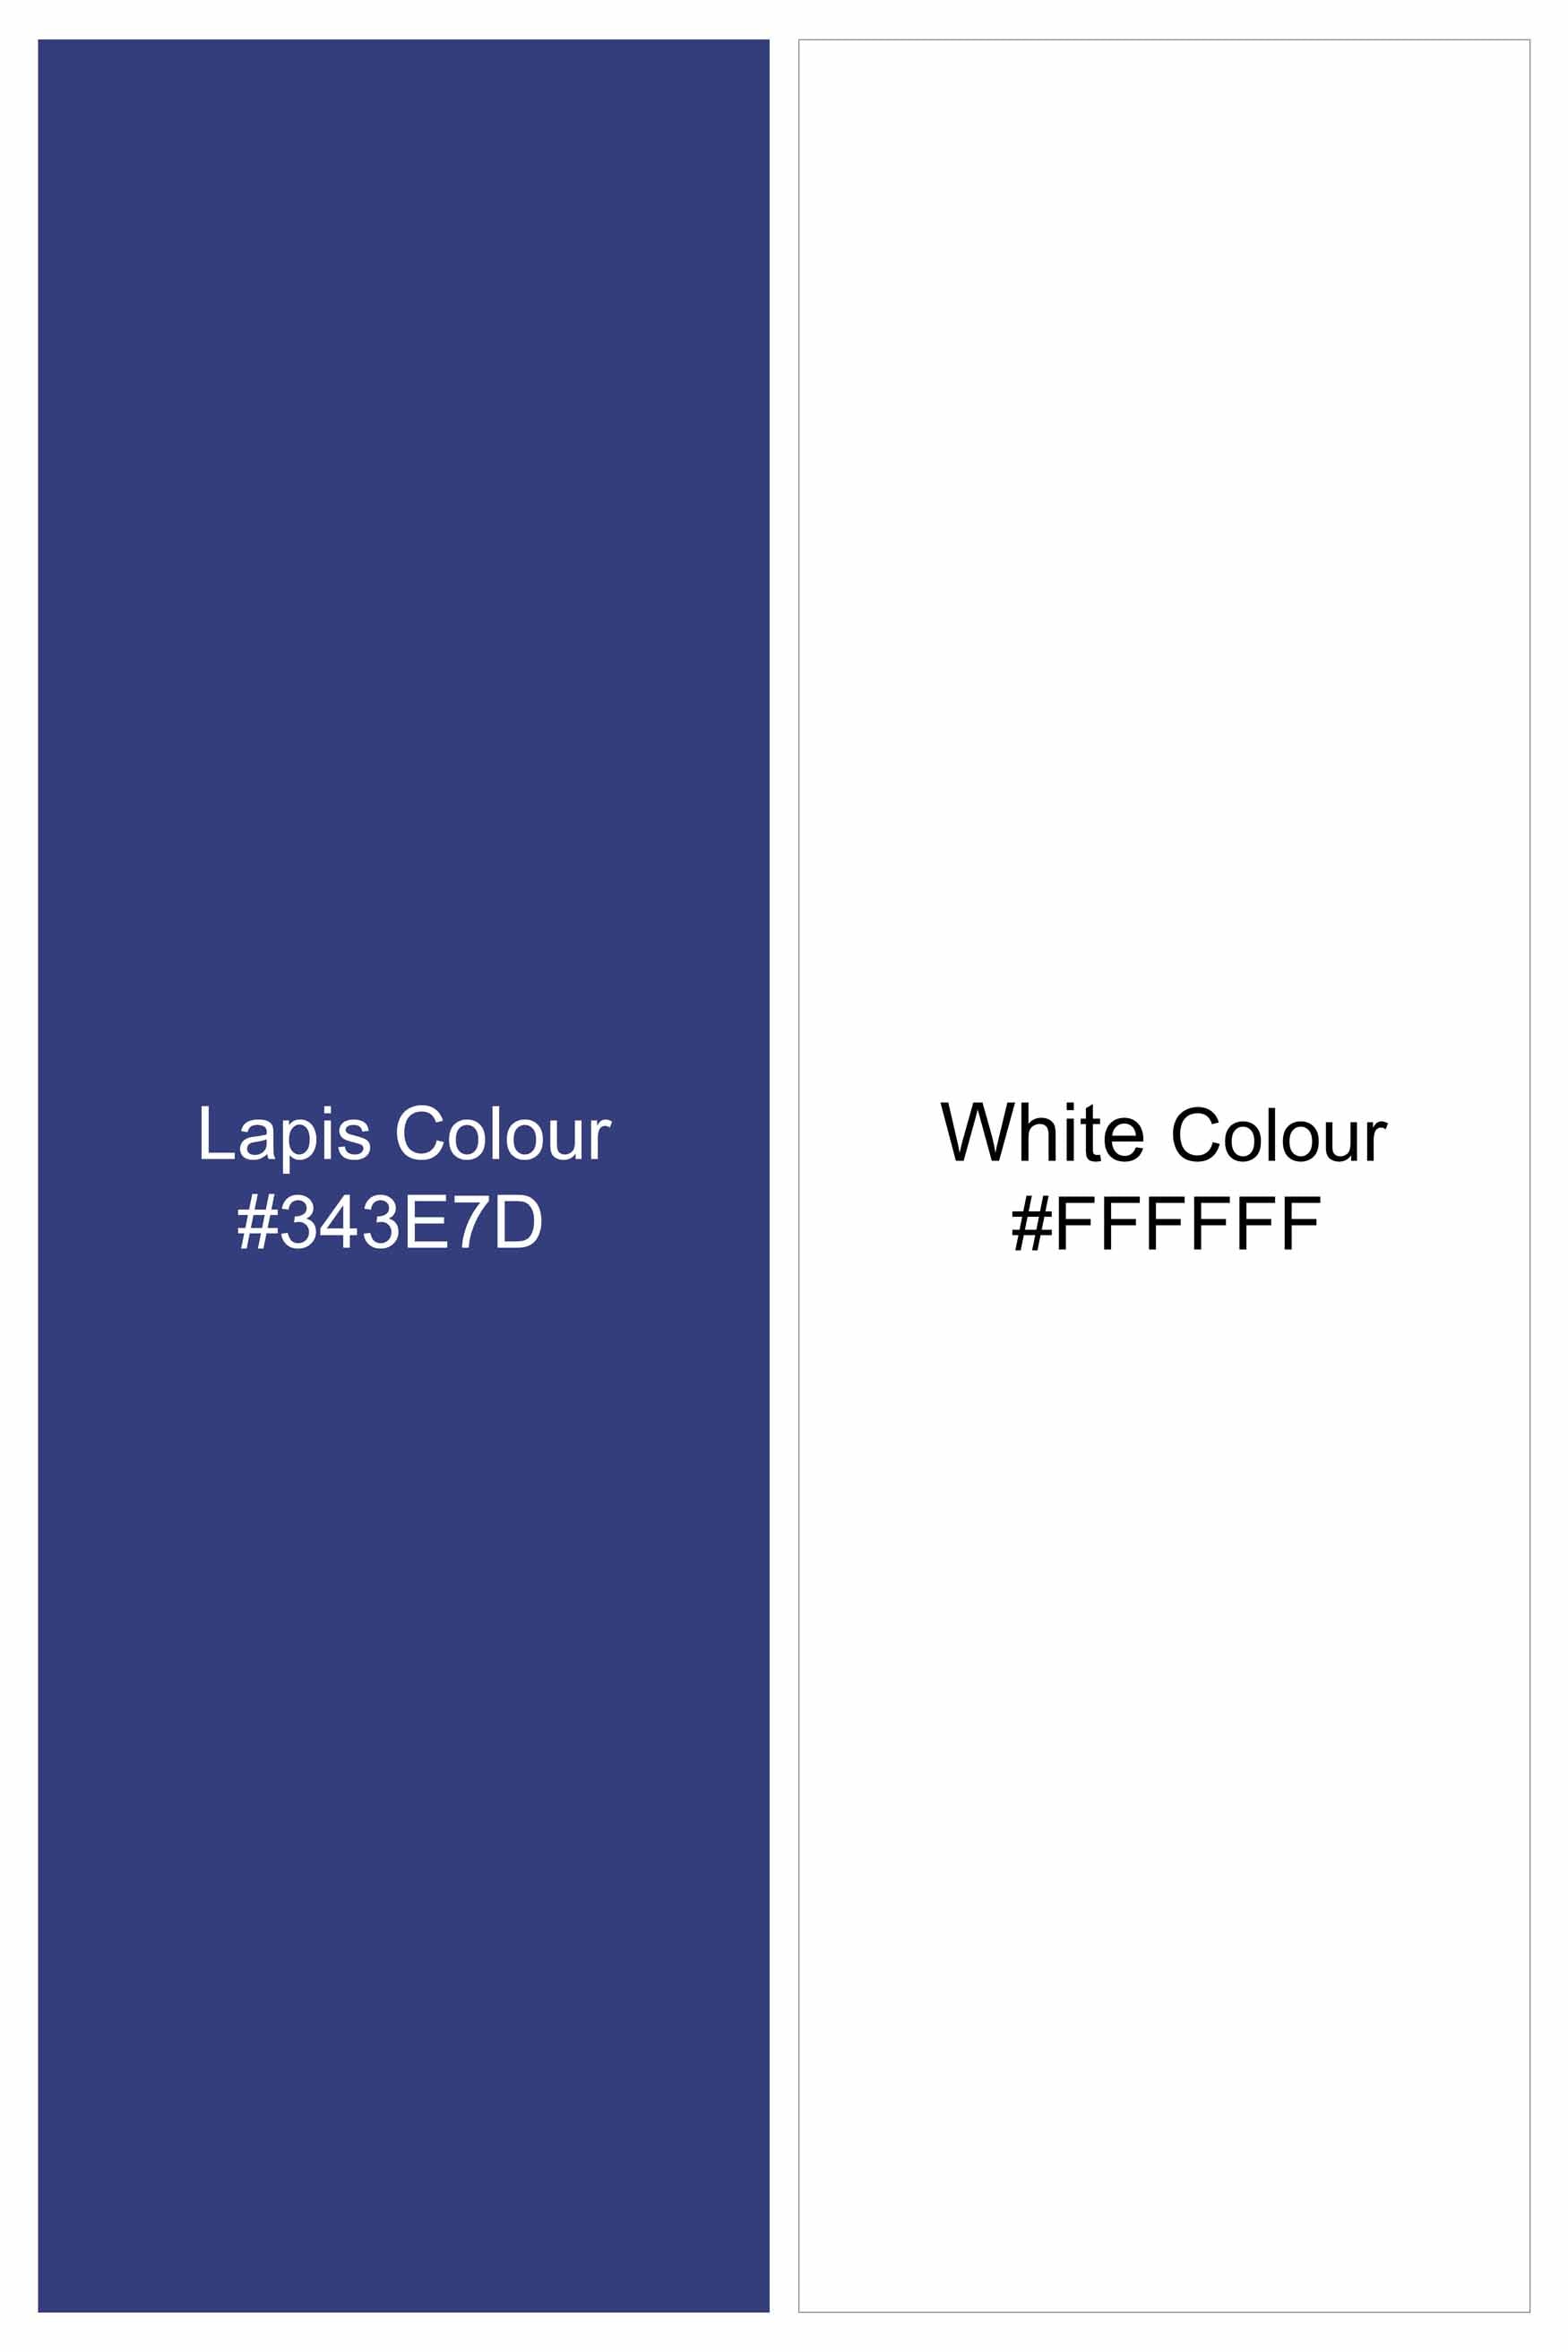 Lapis Blue and White Dotted Subtle Sheen Super Soft Premium Cotton Designer Shirt